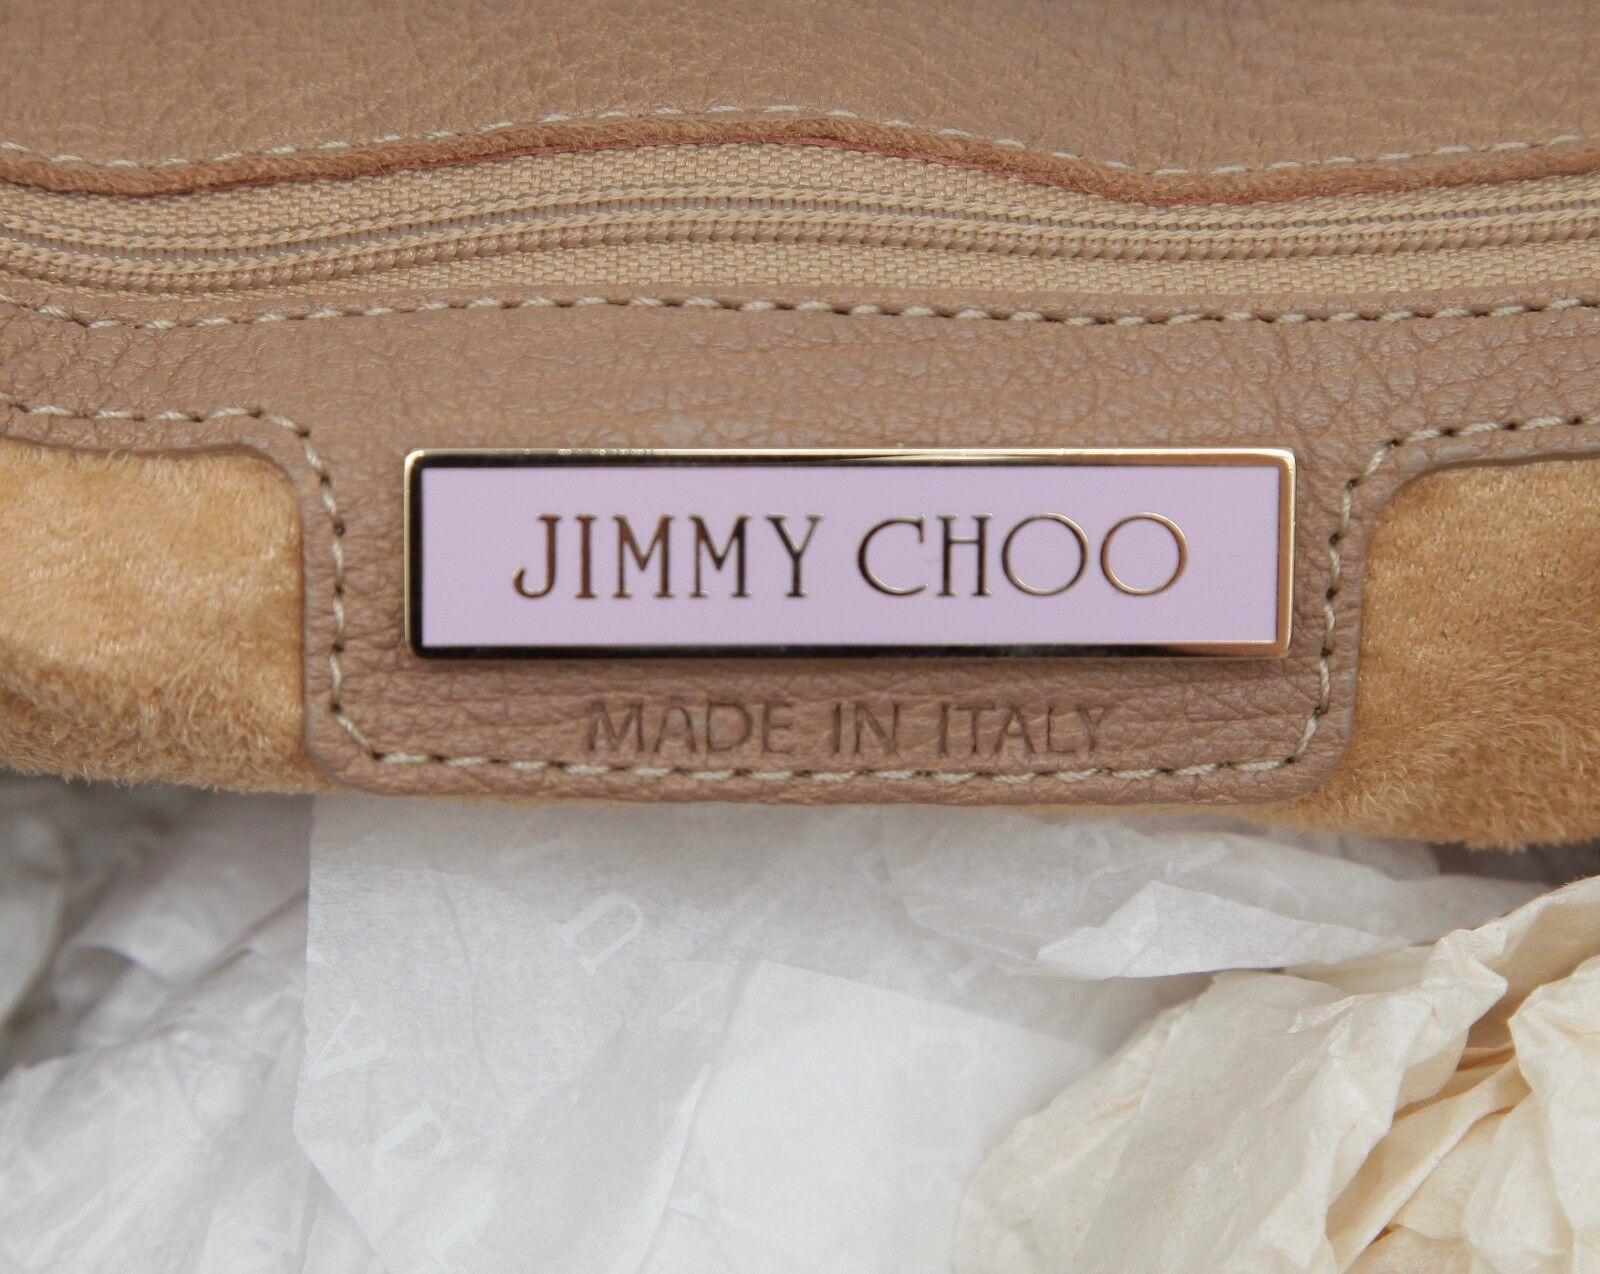 JIMMY CHOO Bag Tan Leather Large ROSABEL Satchel Tote Shoulder Strap Gold HW For Sale 4